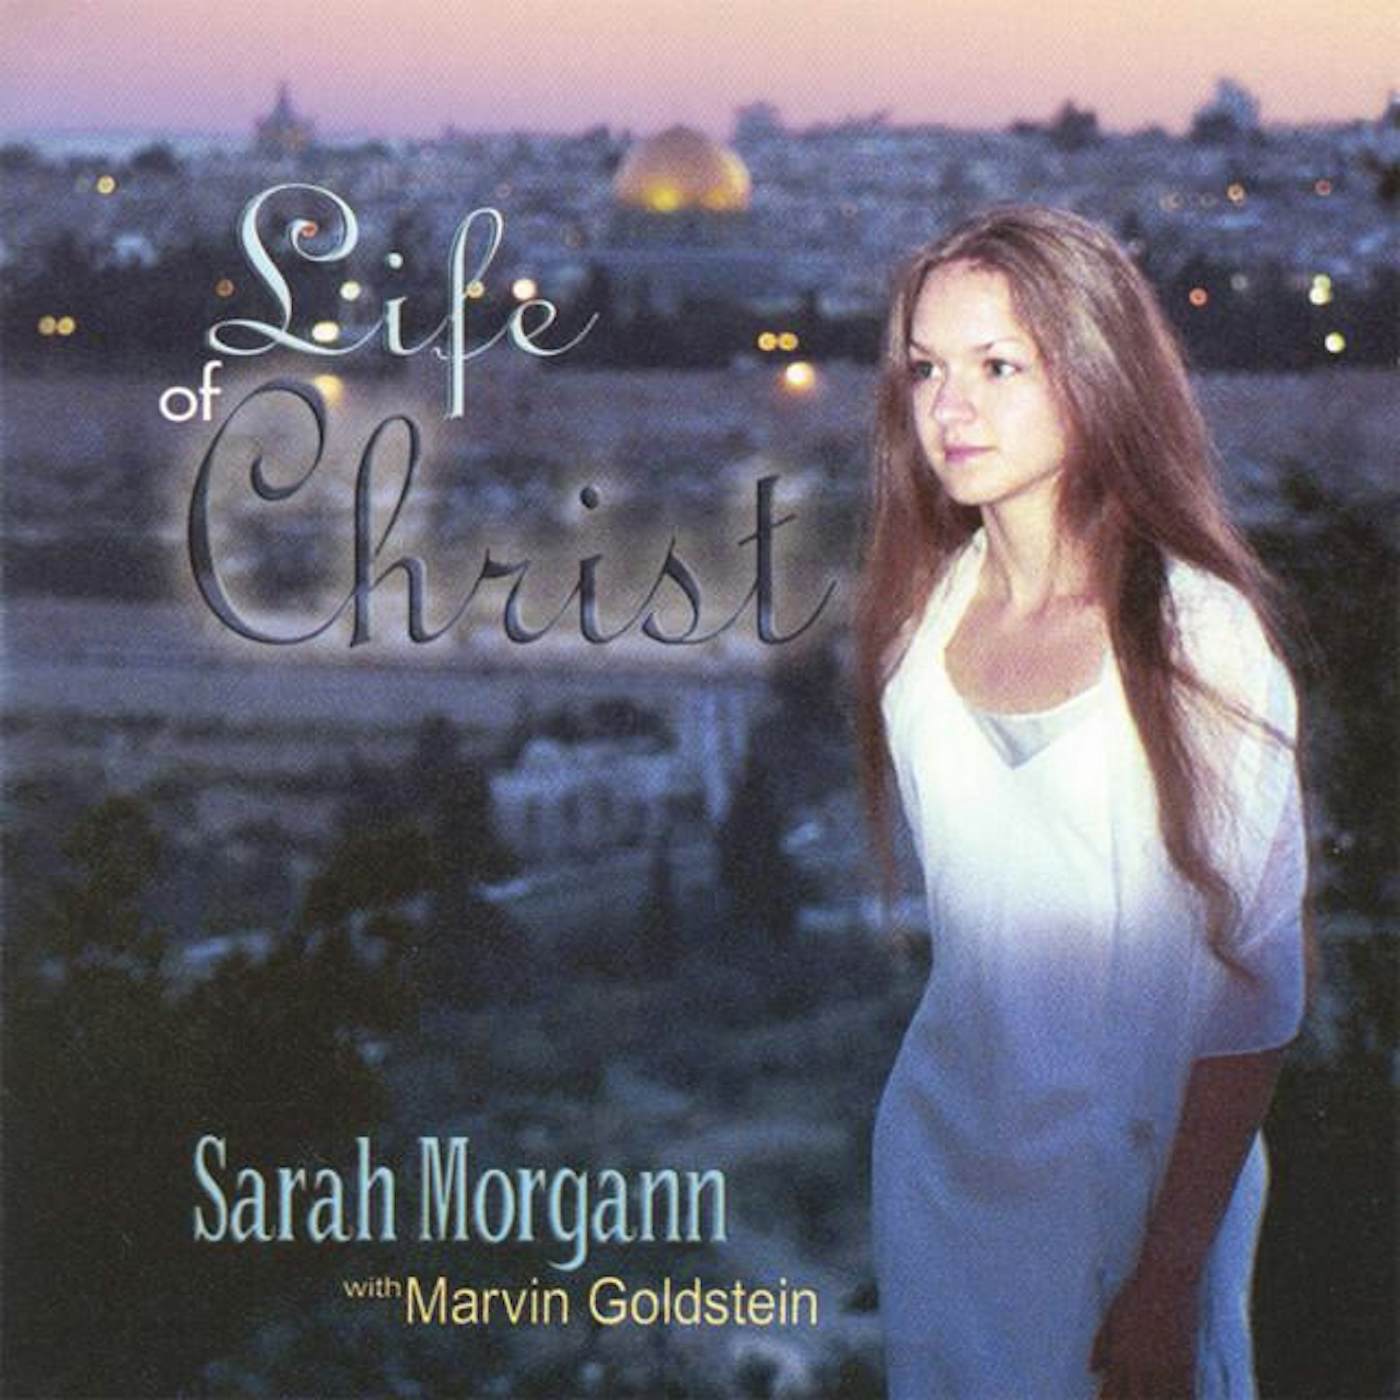 Sarah Morgann